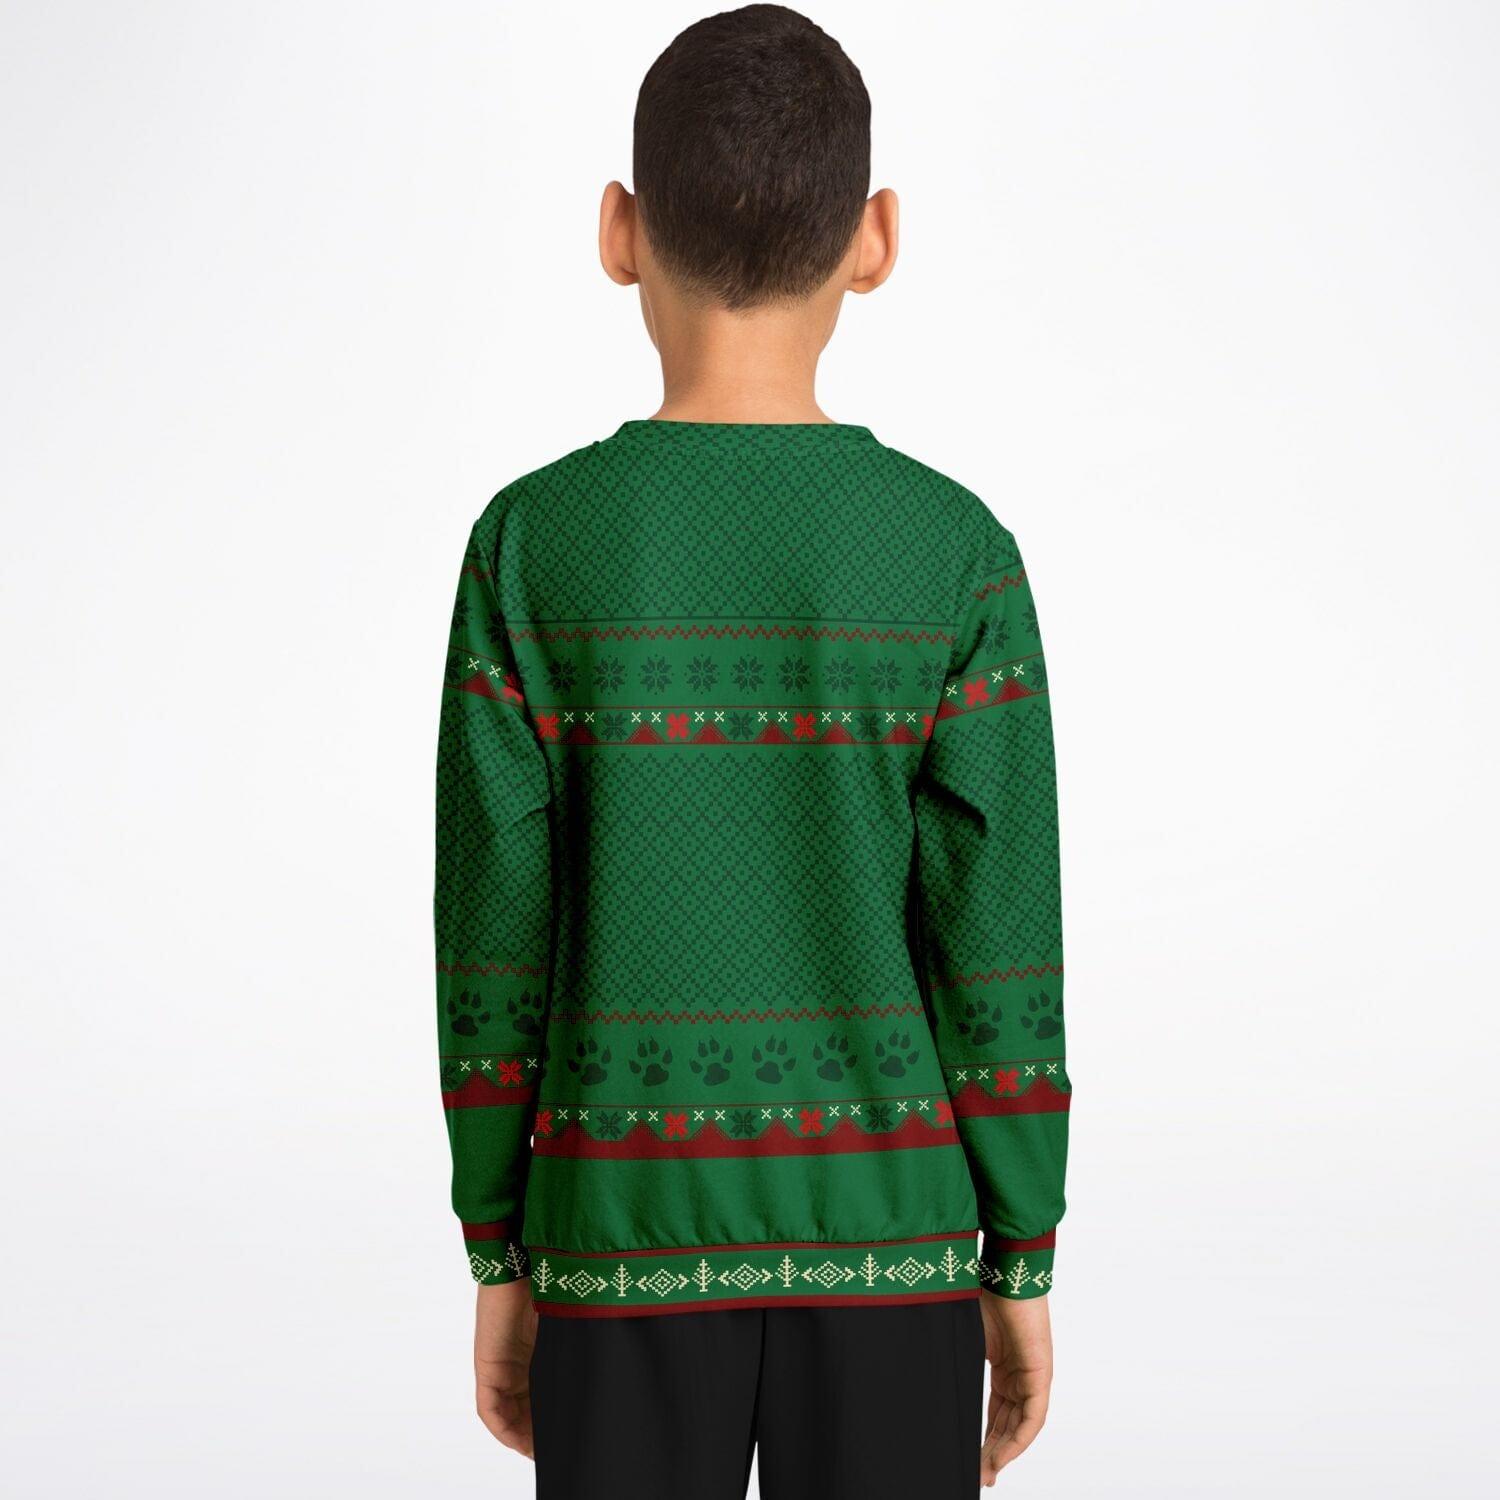 Feliz Navidog Shibu Unu Kids Unisex Ugly Christmas Sweatshirt - TopKoalaTee